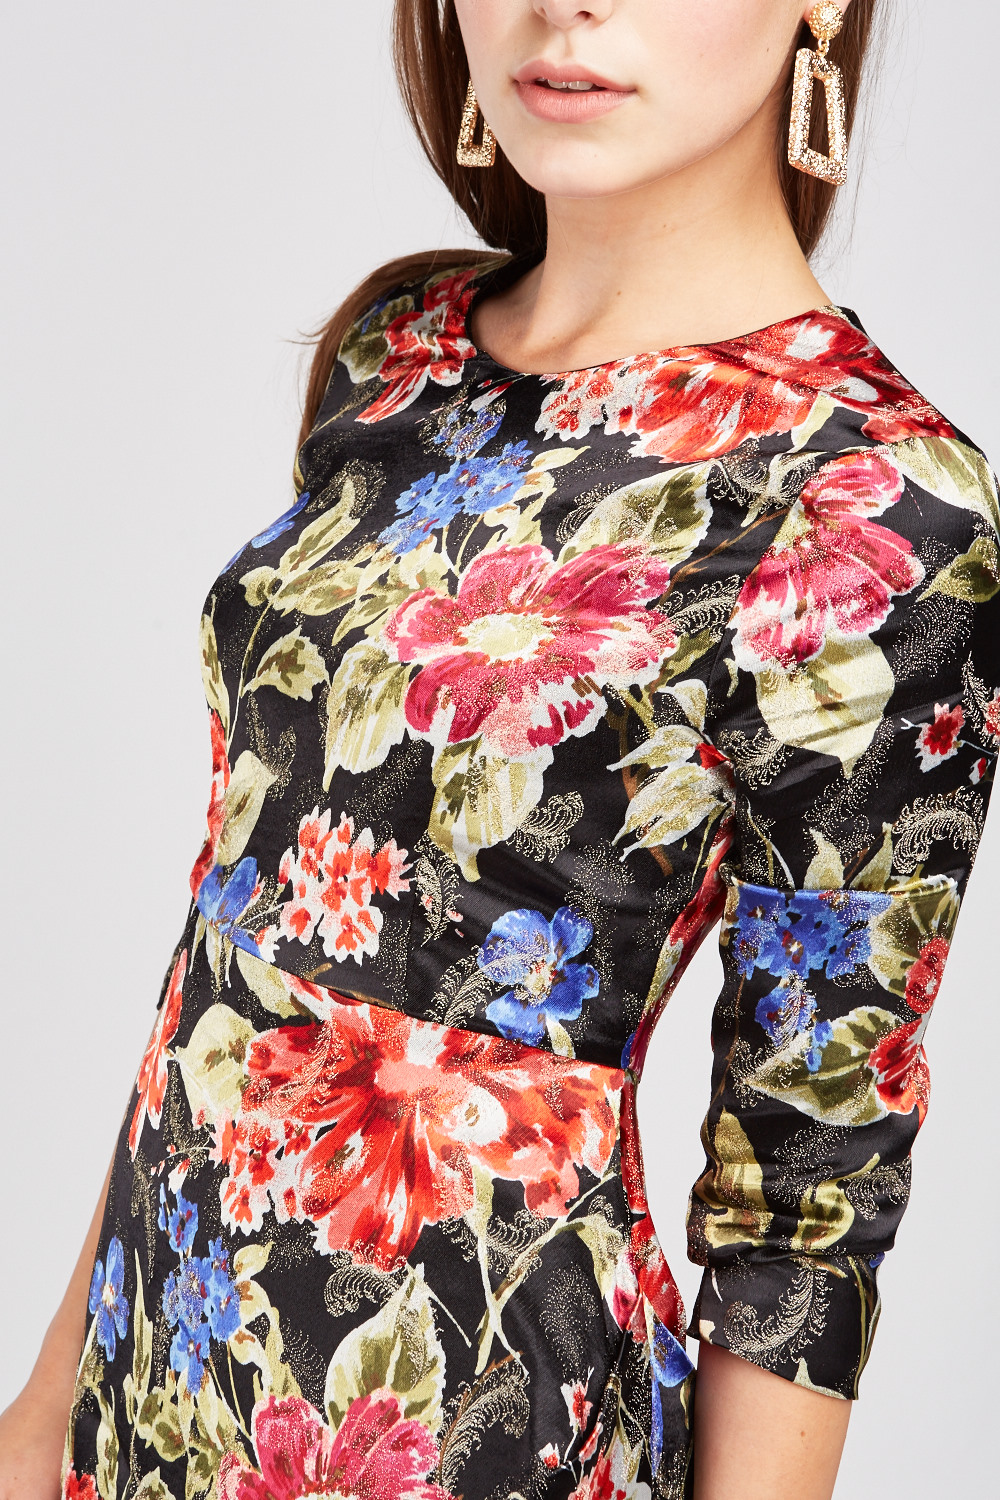 Textured Flower Print Sateen Dress - 3 Colours - Just $6